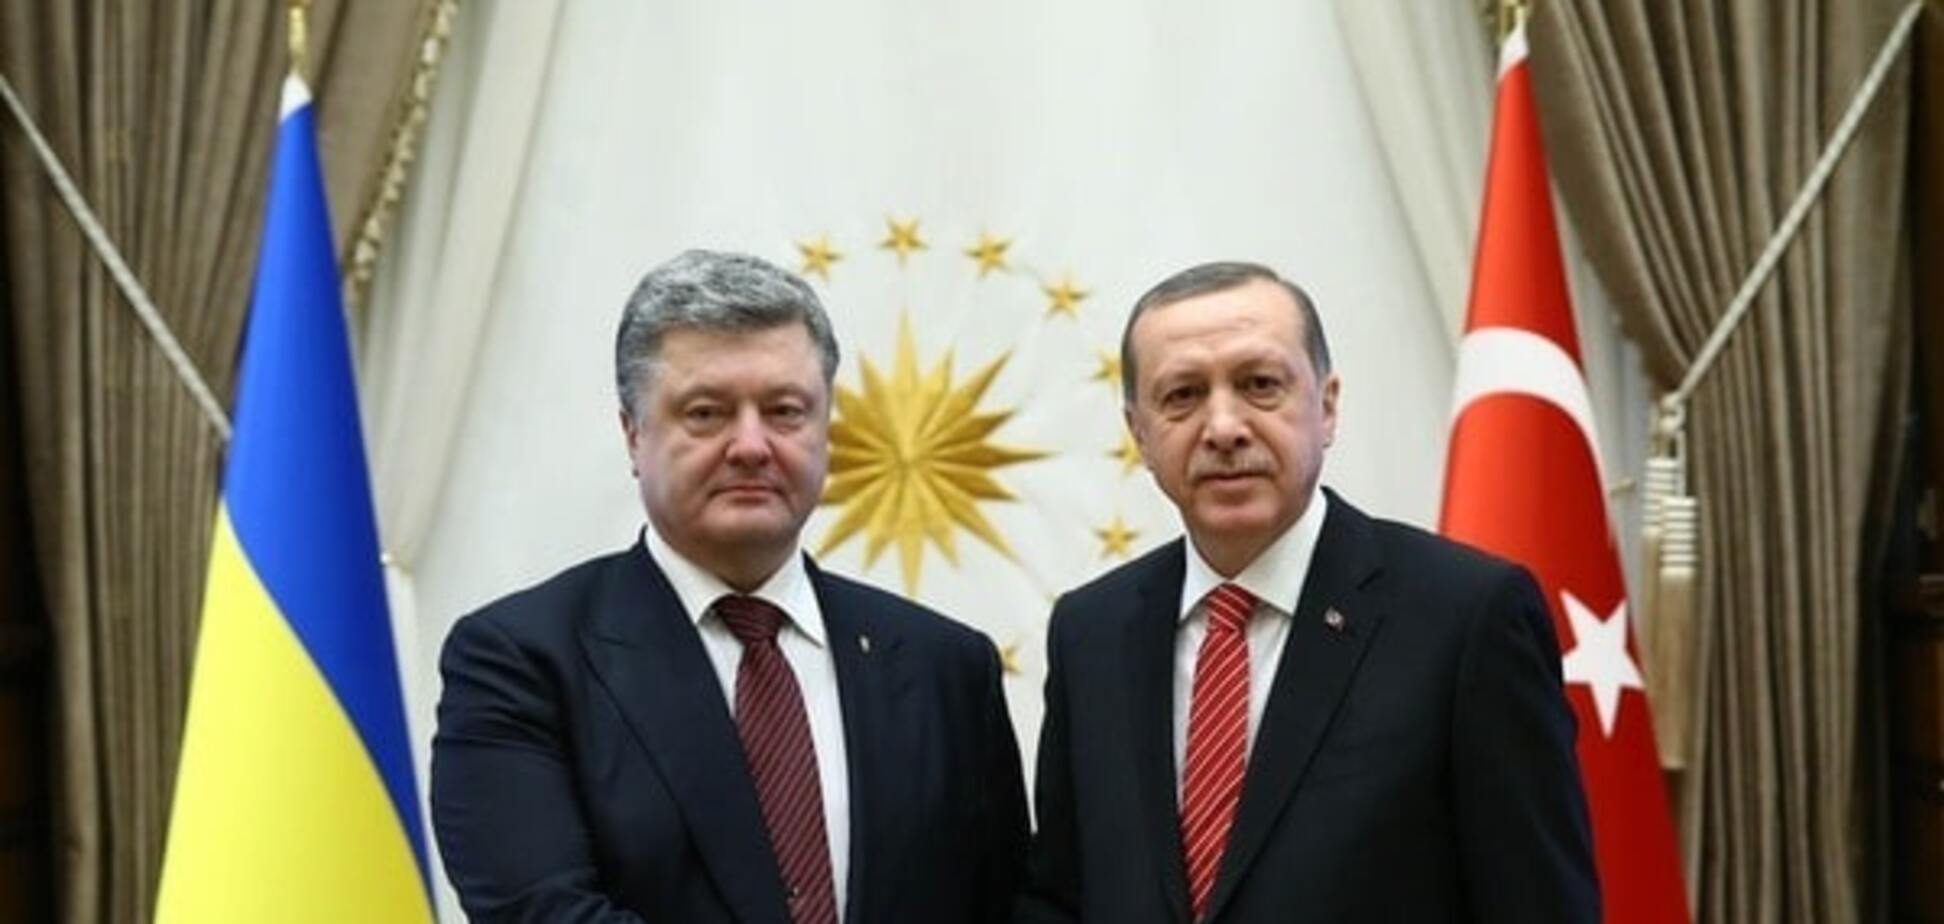 Граница на Донбассе должна быть отдана под контроль Украине - Эрдоган